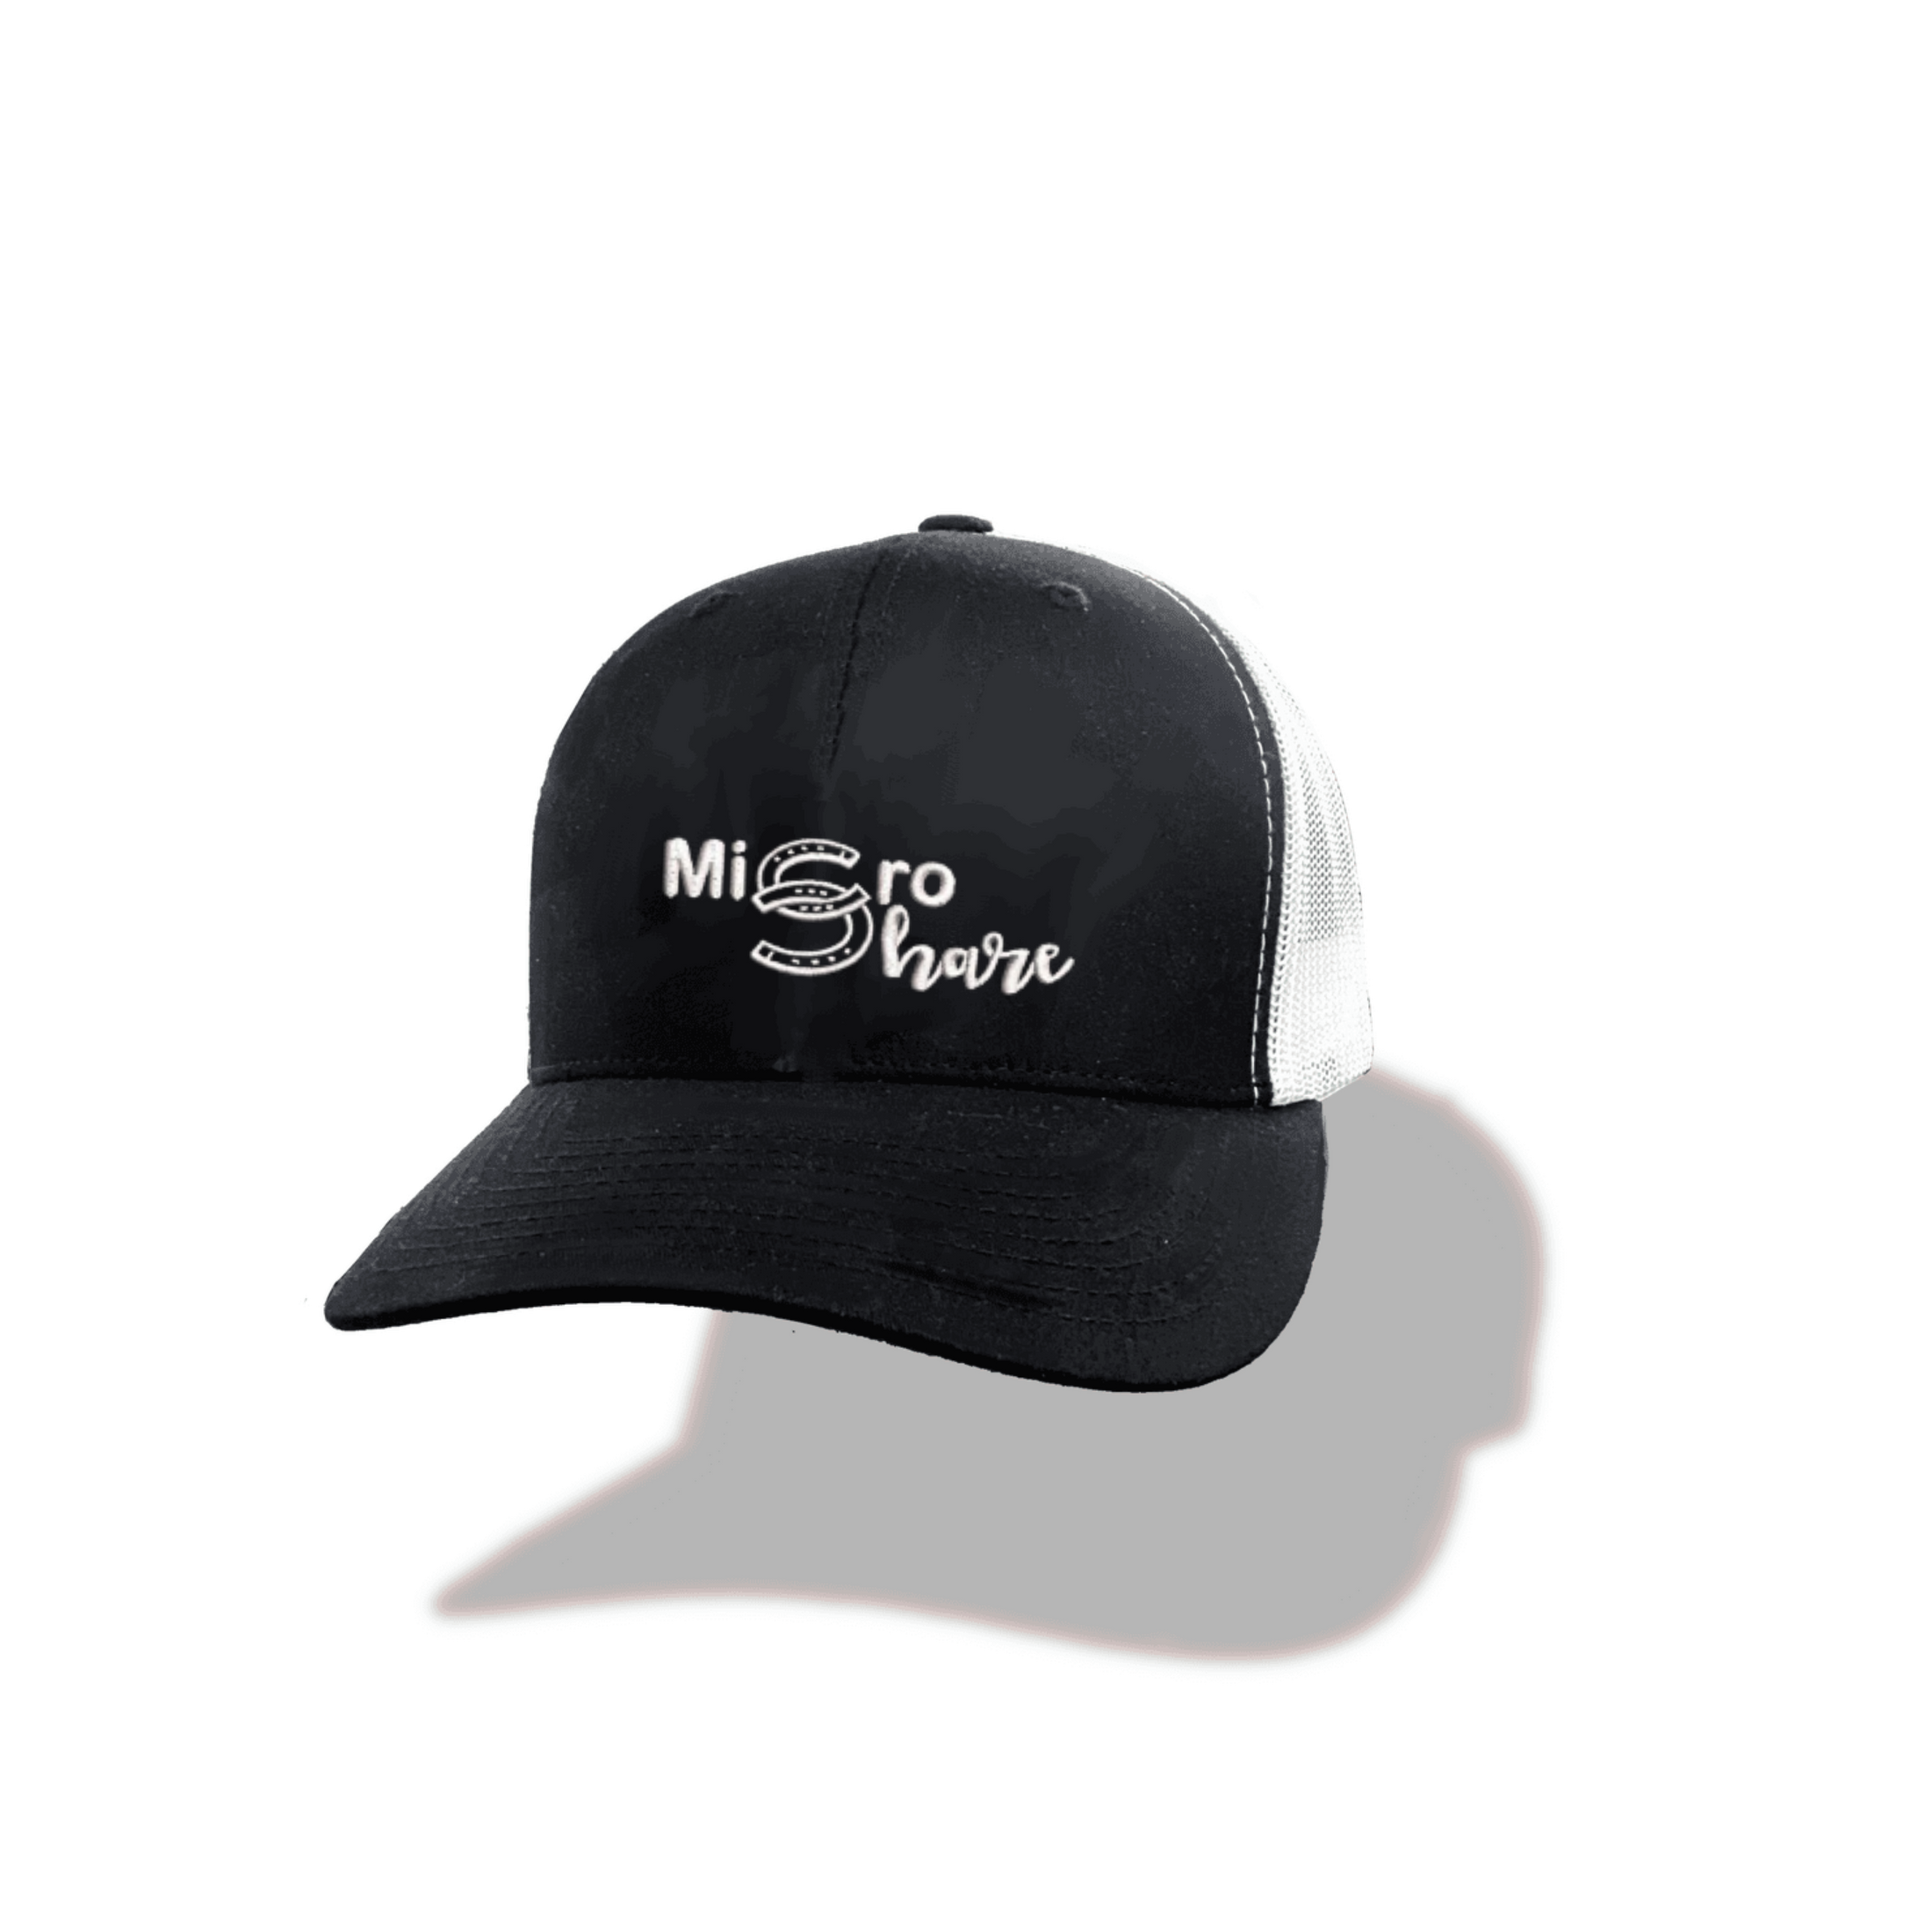 Micro Share Retro Trucker Hat